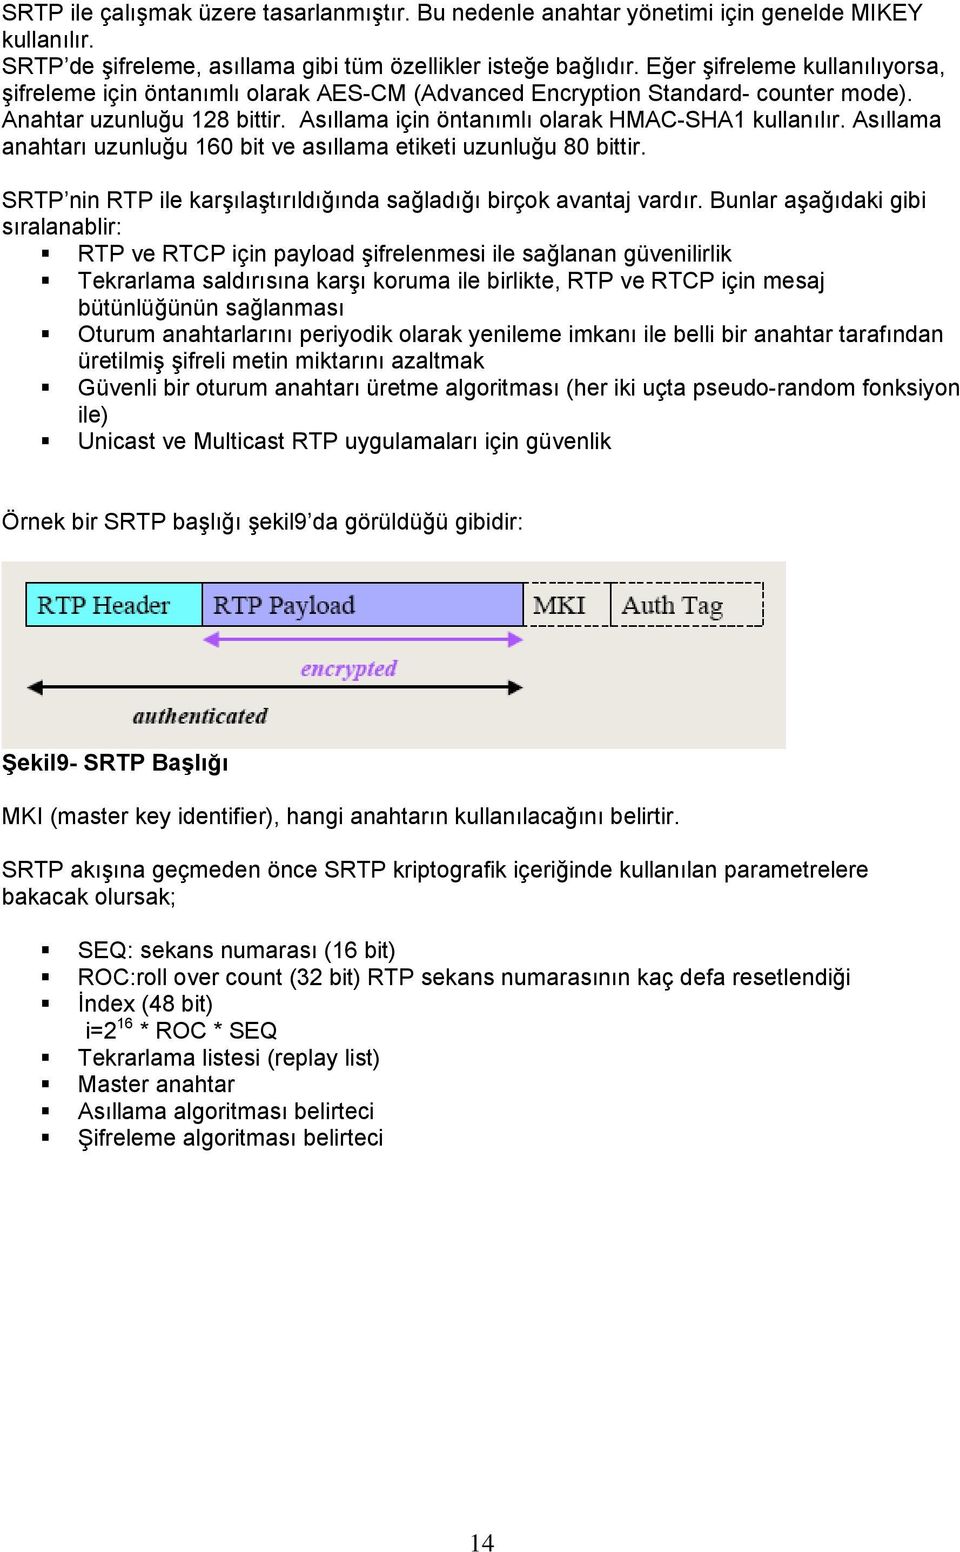 Asıllama anahtarı uzunluğu 160 bit ve asıllama etiketi uzunluğu 80 bittir. SRTP nin RTP ile karşılaştırıldığında sağladığı birçok avantaj vardır.